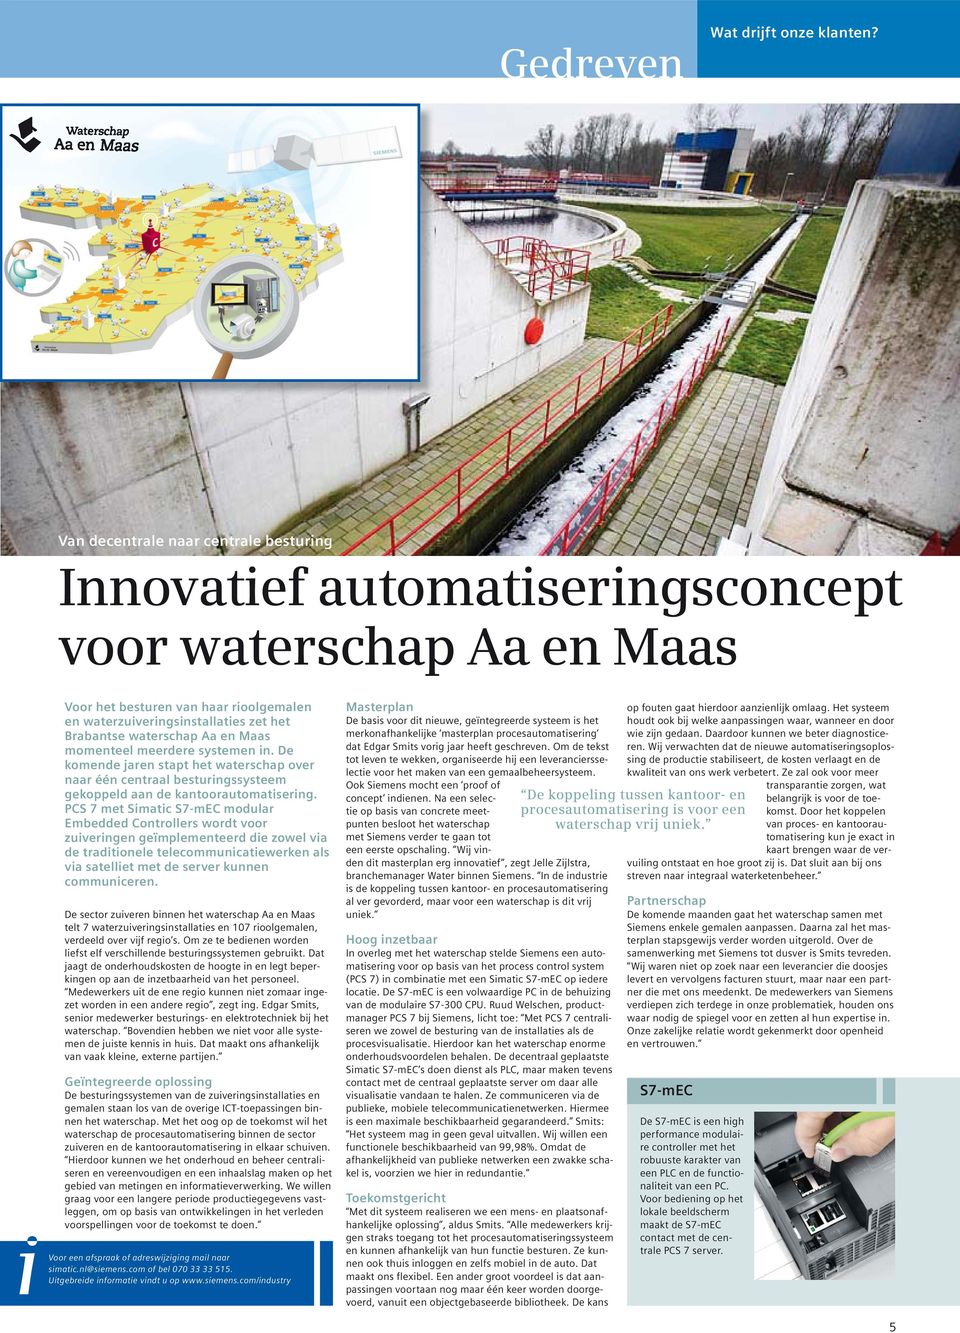 waterschap Aa en Maas momenteel meerdere systemen in. De komende jaren stapt het waterschap over naar één centraal besturingssysteem gekoppeld aan de kantoorautomatisering.